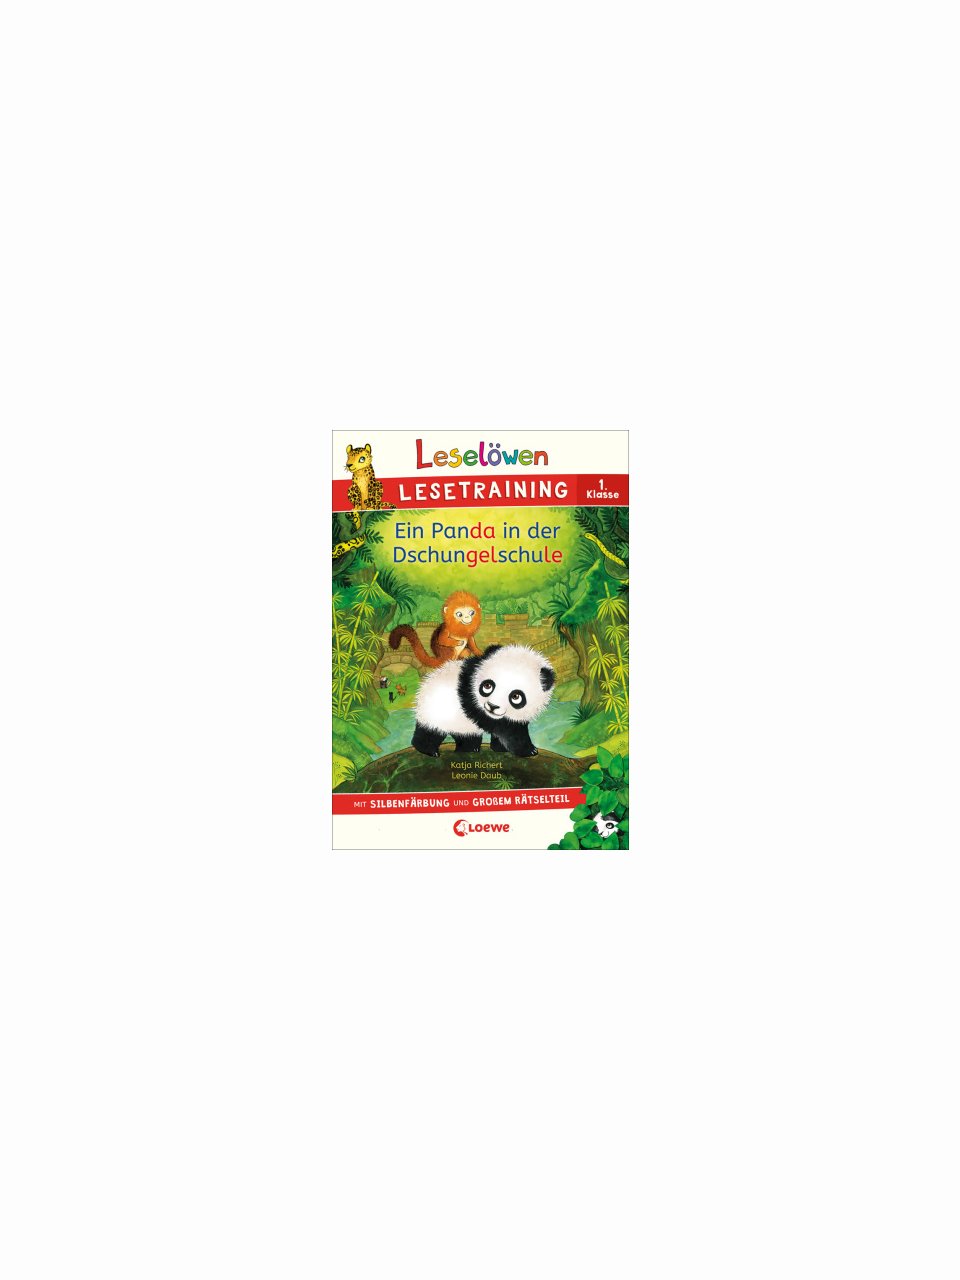 Leselöwen - Ein Panda in der Dschungelschule